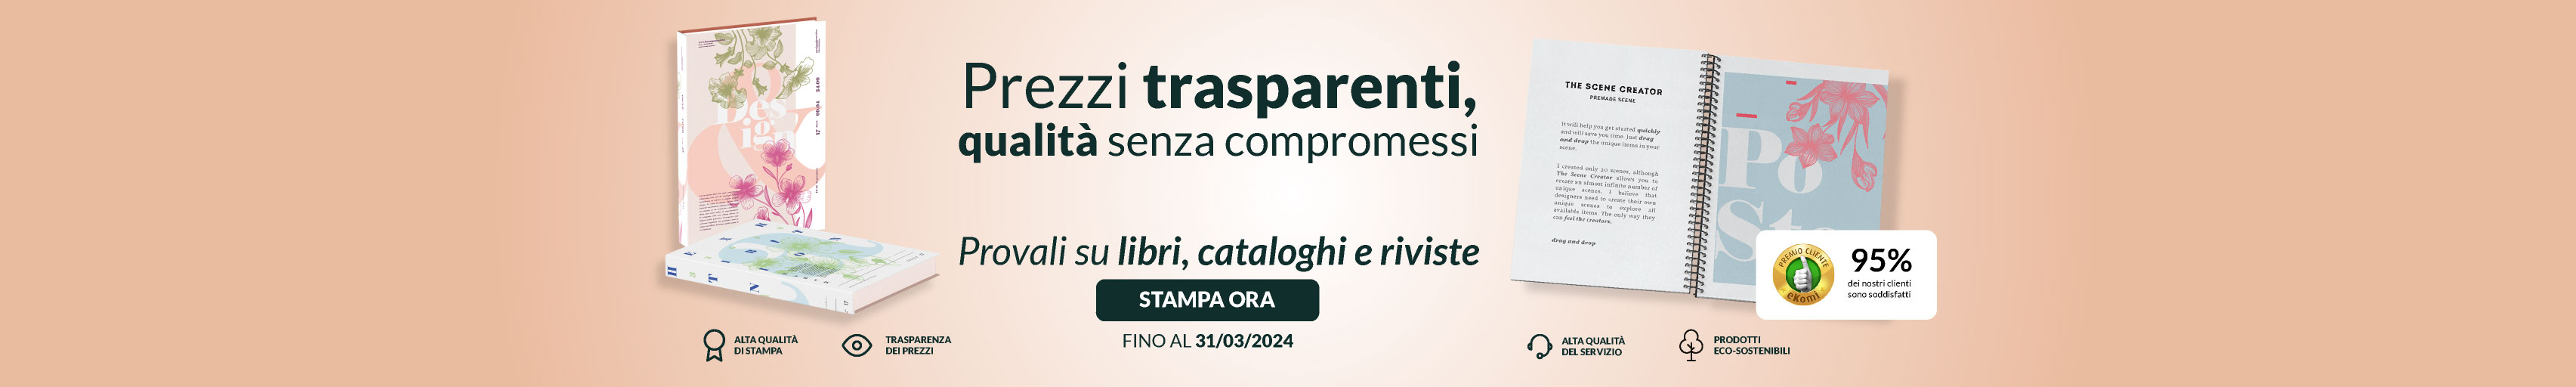 Homepage B - Libri e cataloghi sconto